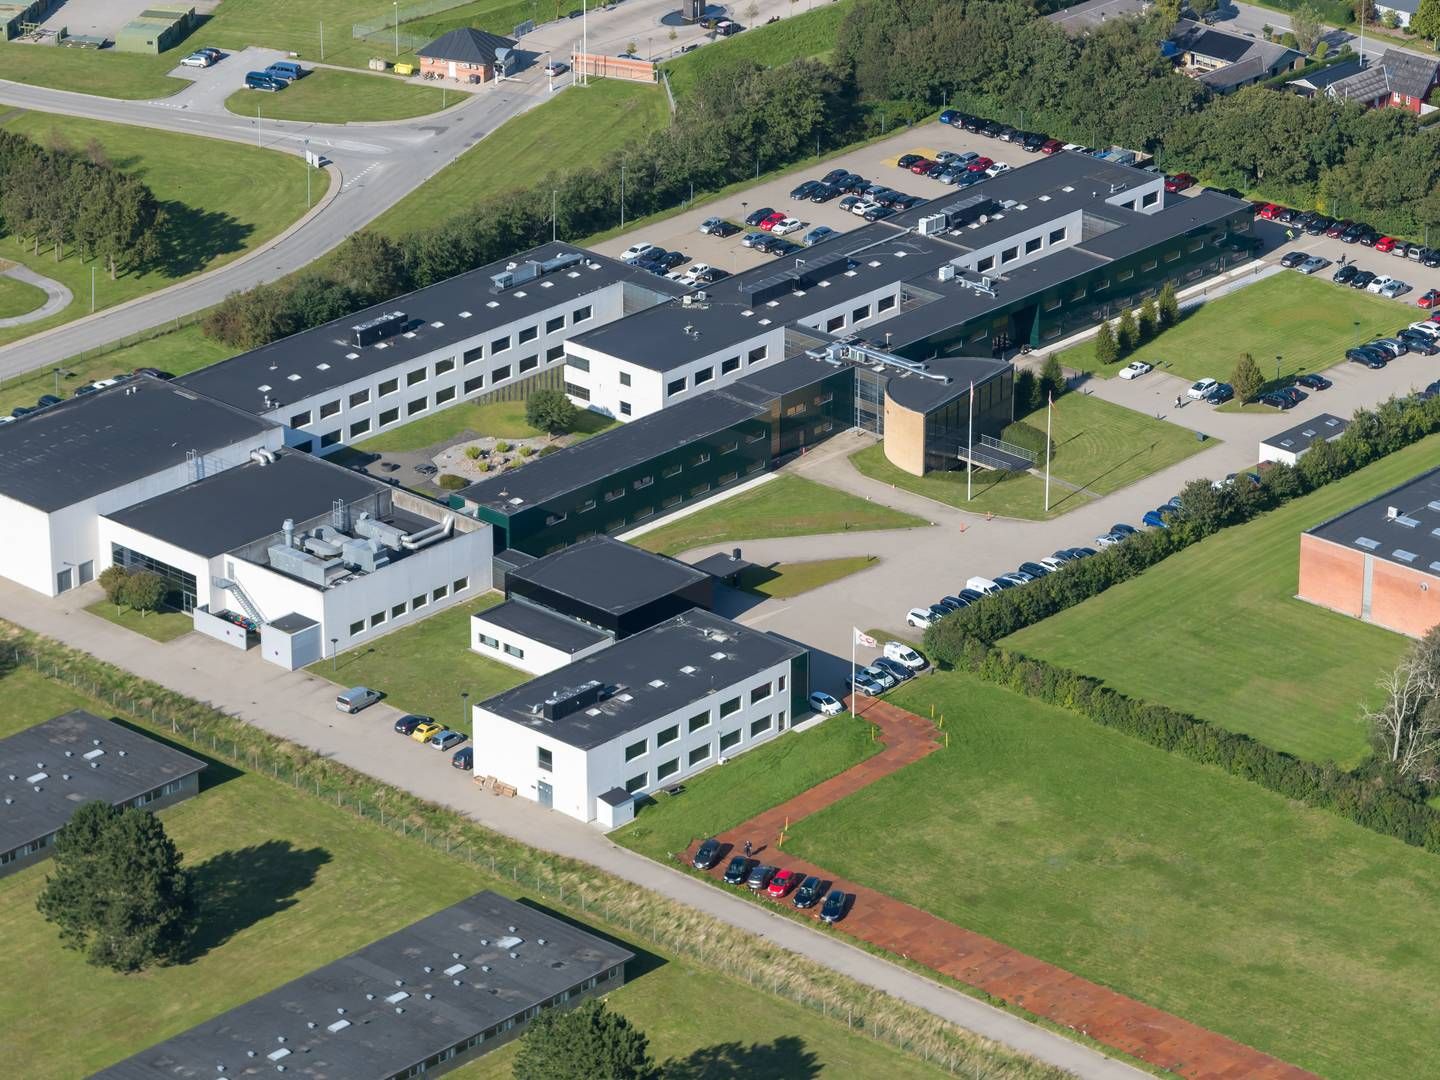 Sampension frasælger ejendom i Nørresundby ved Aalborg. | Foto: PR / Sampension